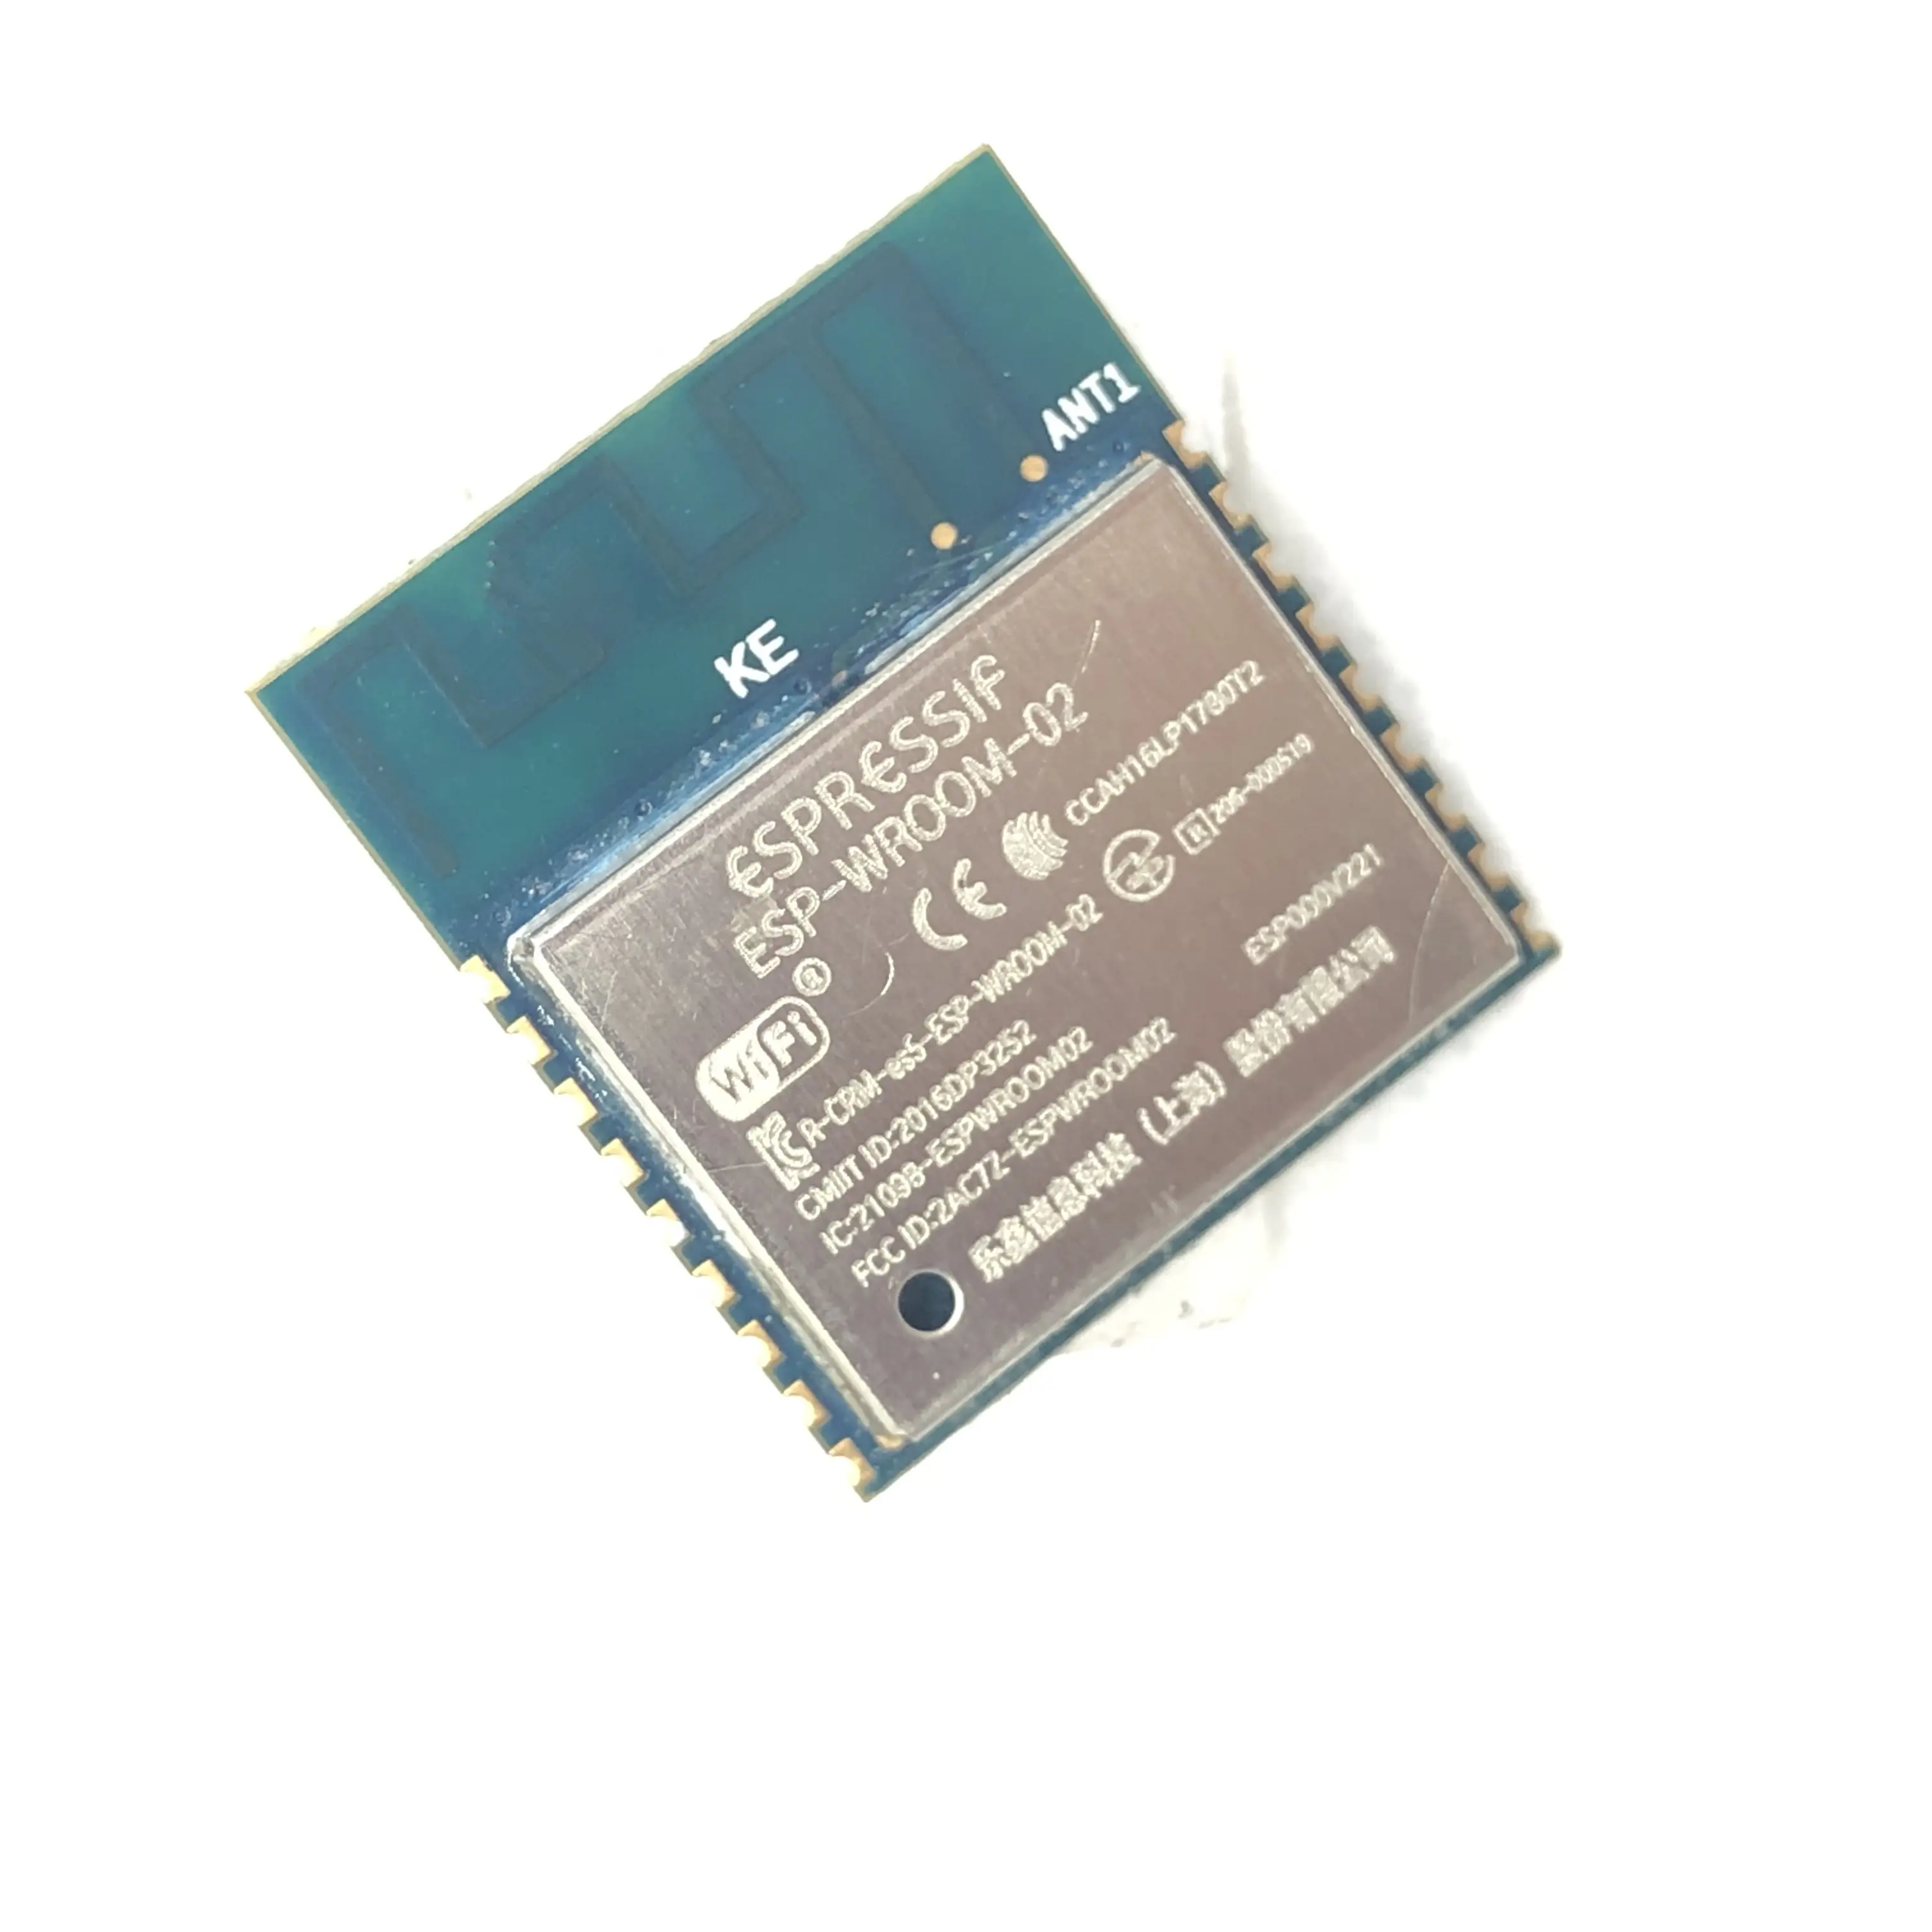 Módulo wi-fi Espressif ESP-WROOM-02 4 MB ased em esp8266 módulo wi-fi serial com FCC CE RoHS para dispositivo de placa inteligente iot